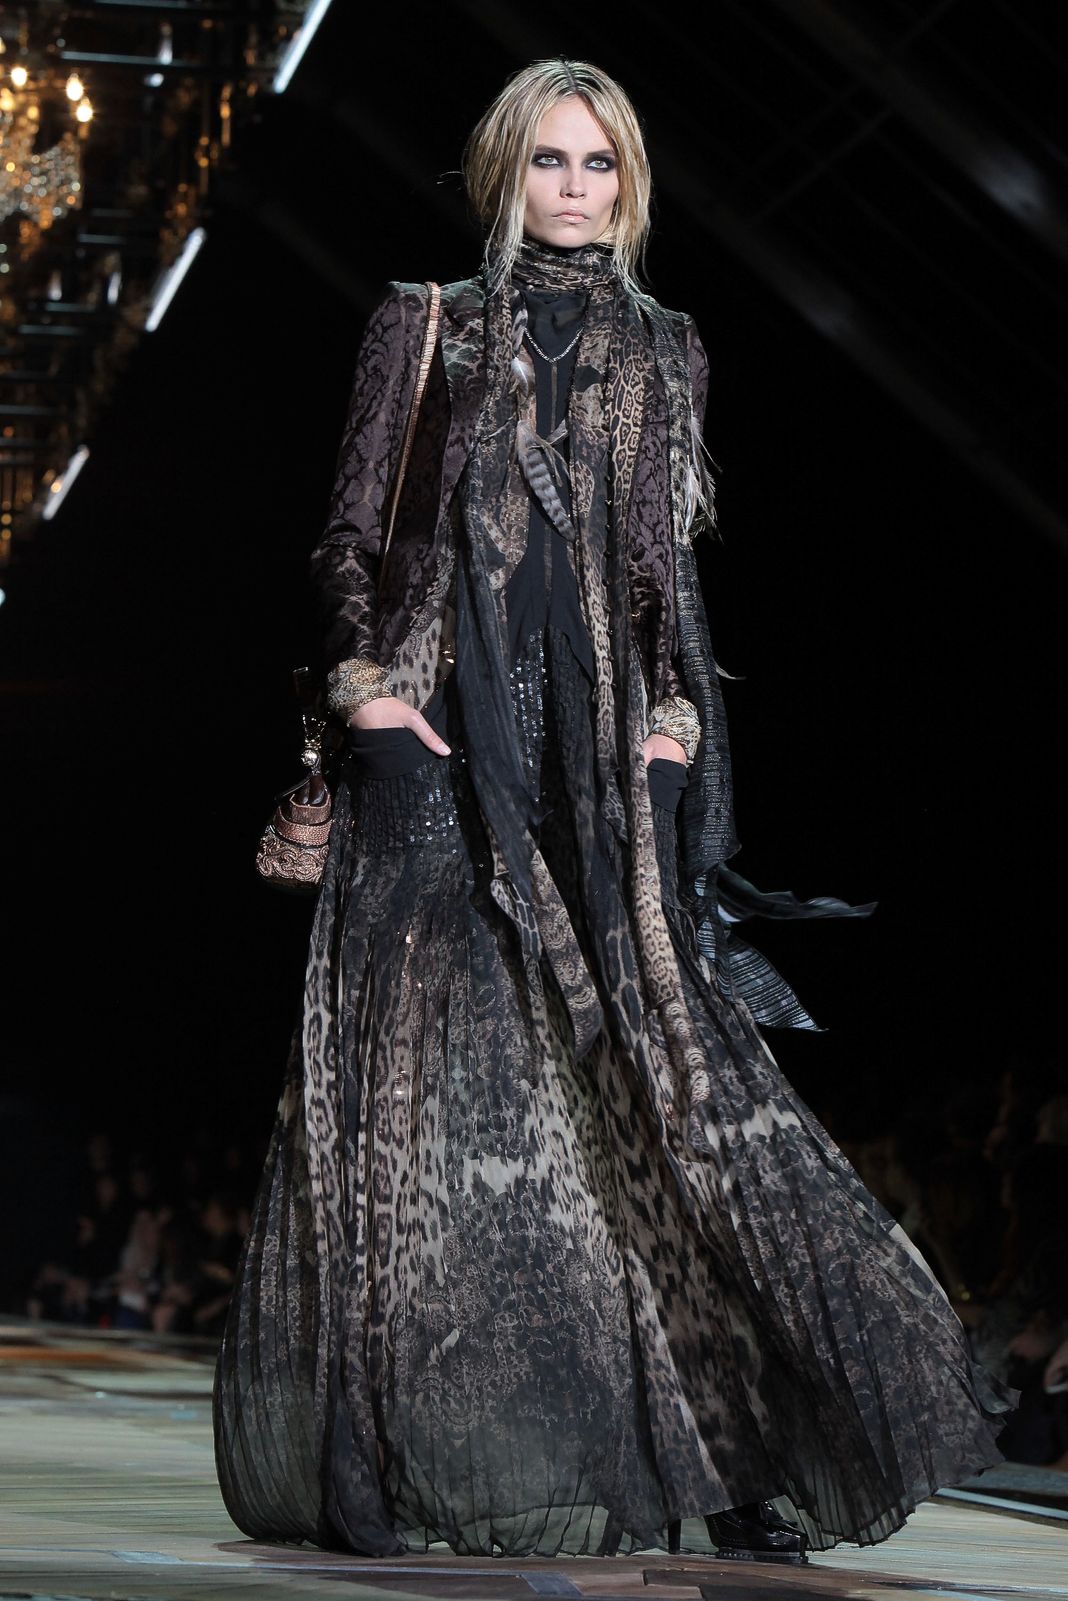 Идет по подиуму во время показа мод Roberto Cavalli в рамках Недели женской моды.